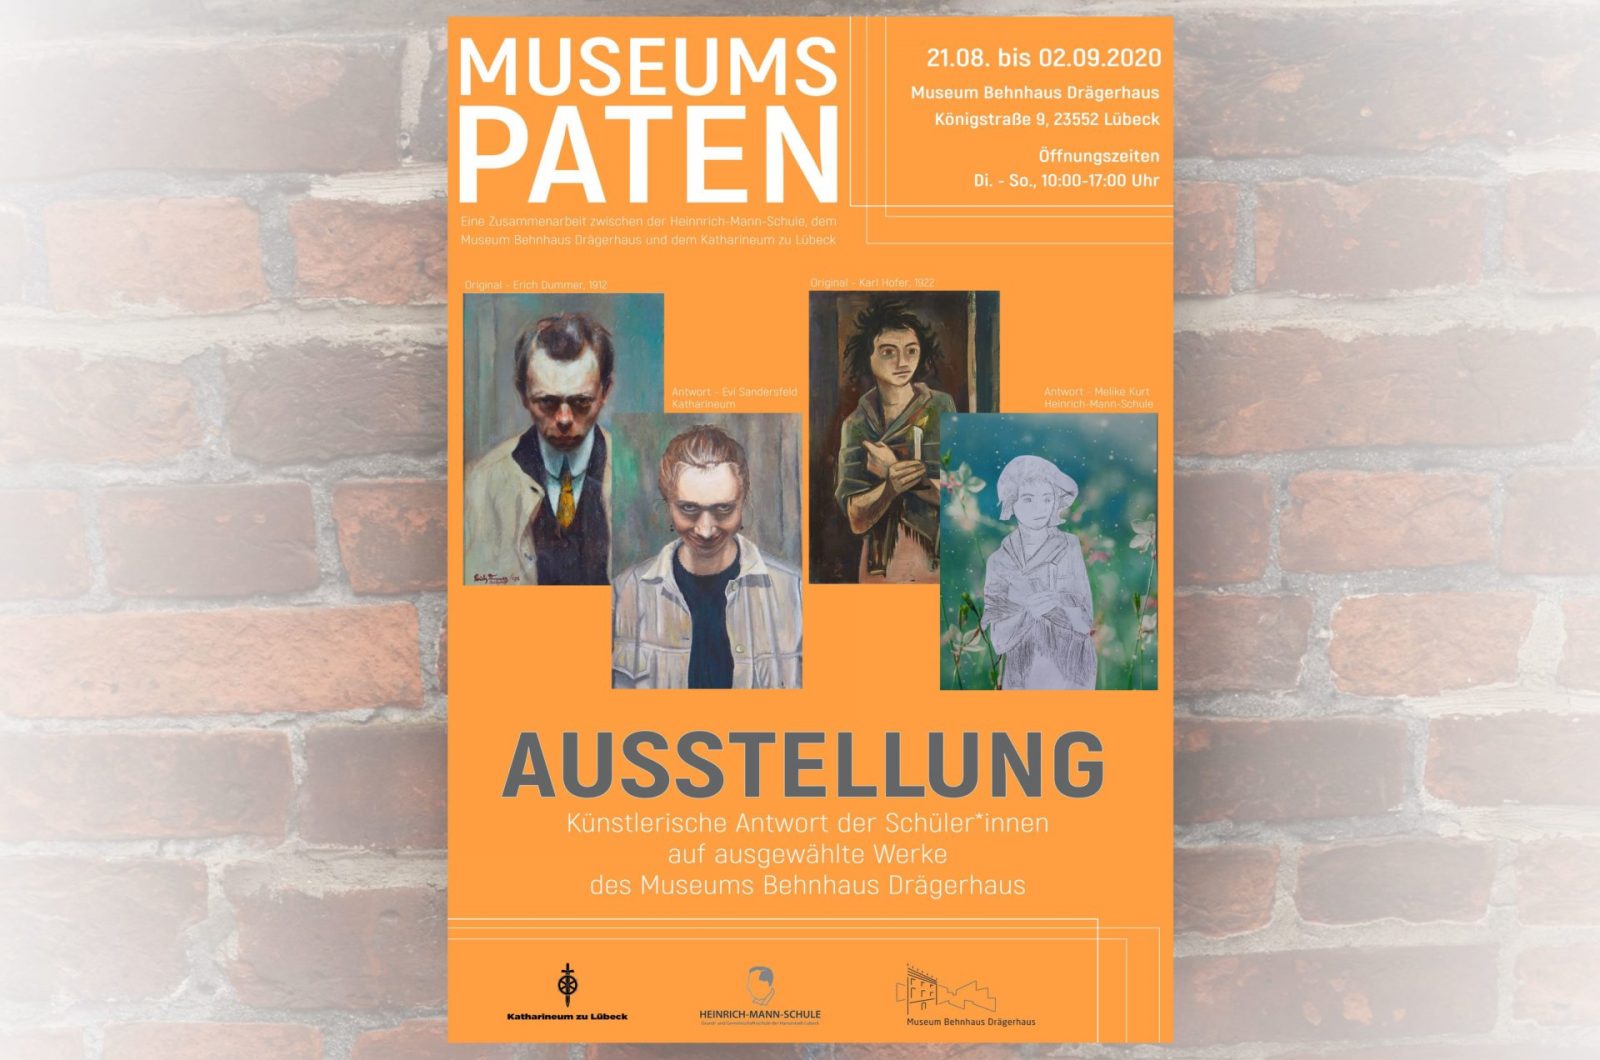 Ausstellung "Museumspaten" im Behnhaus Drägerhaus